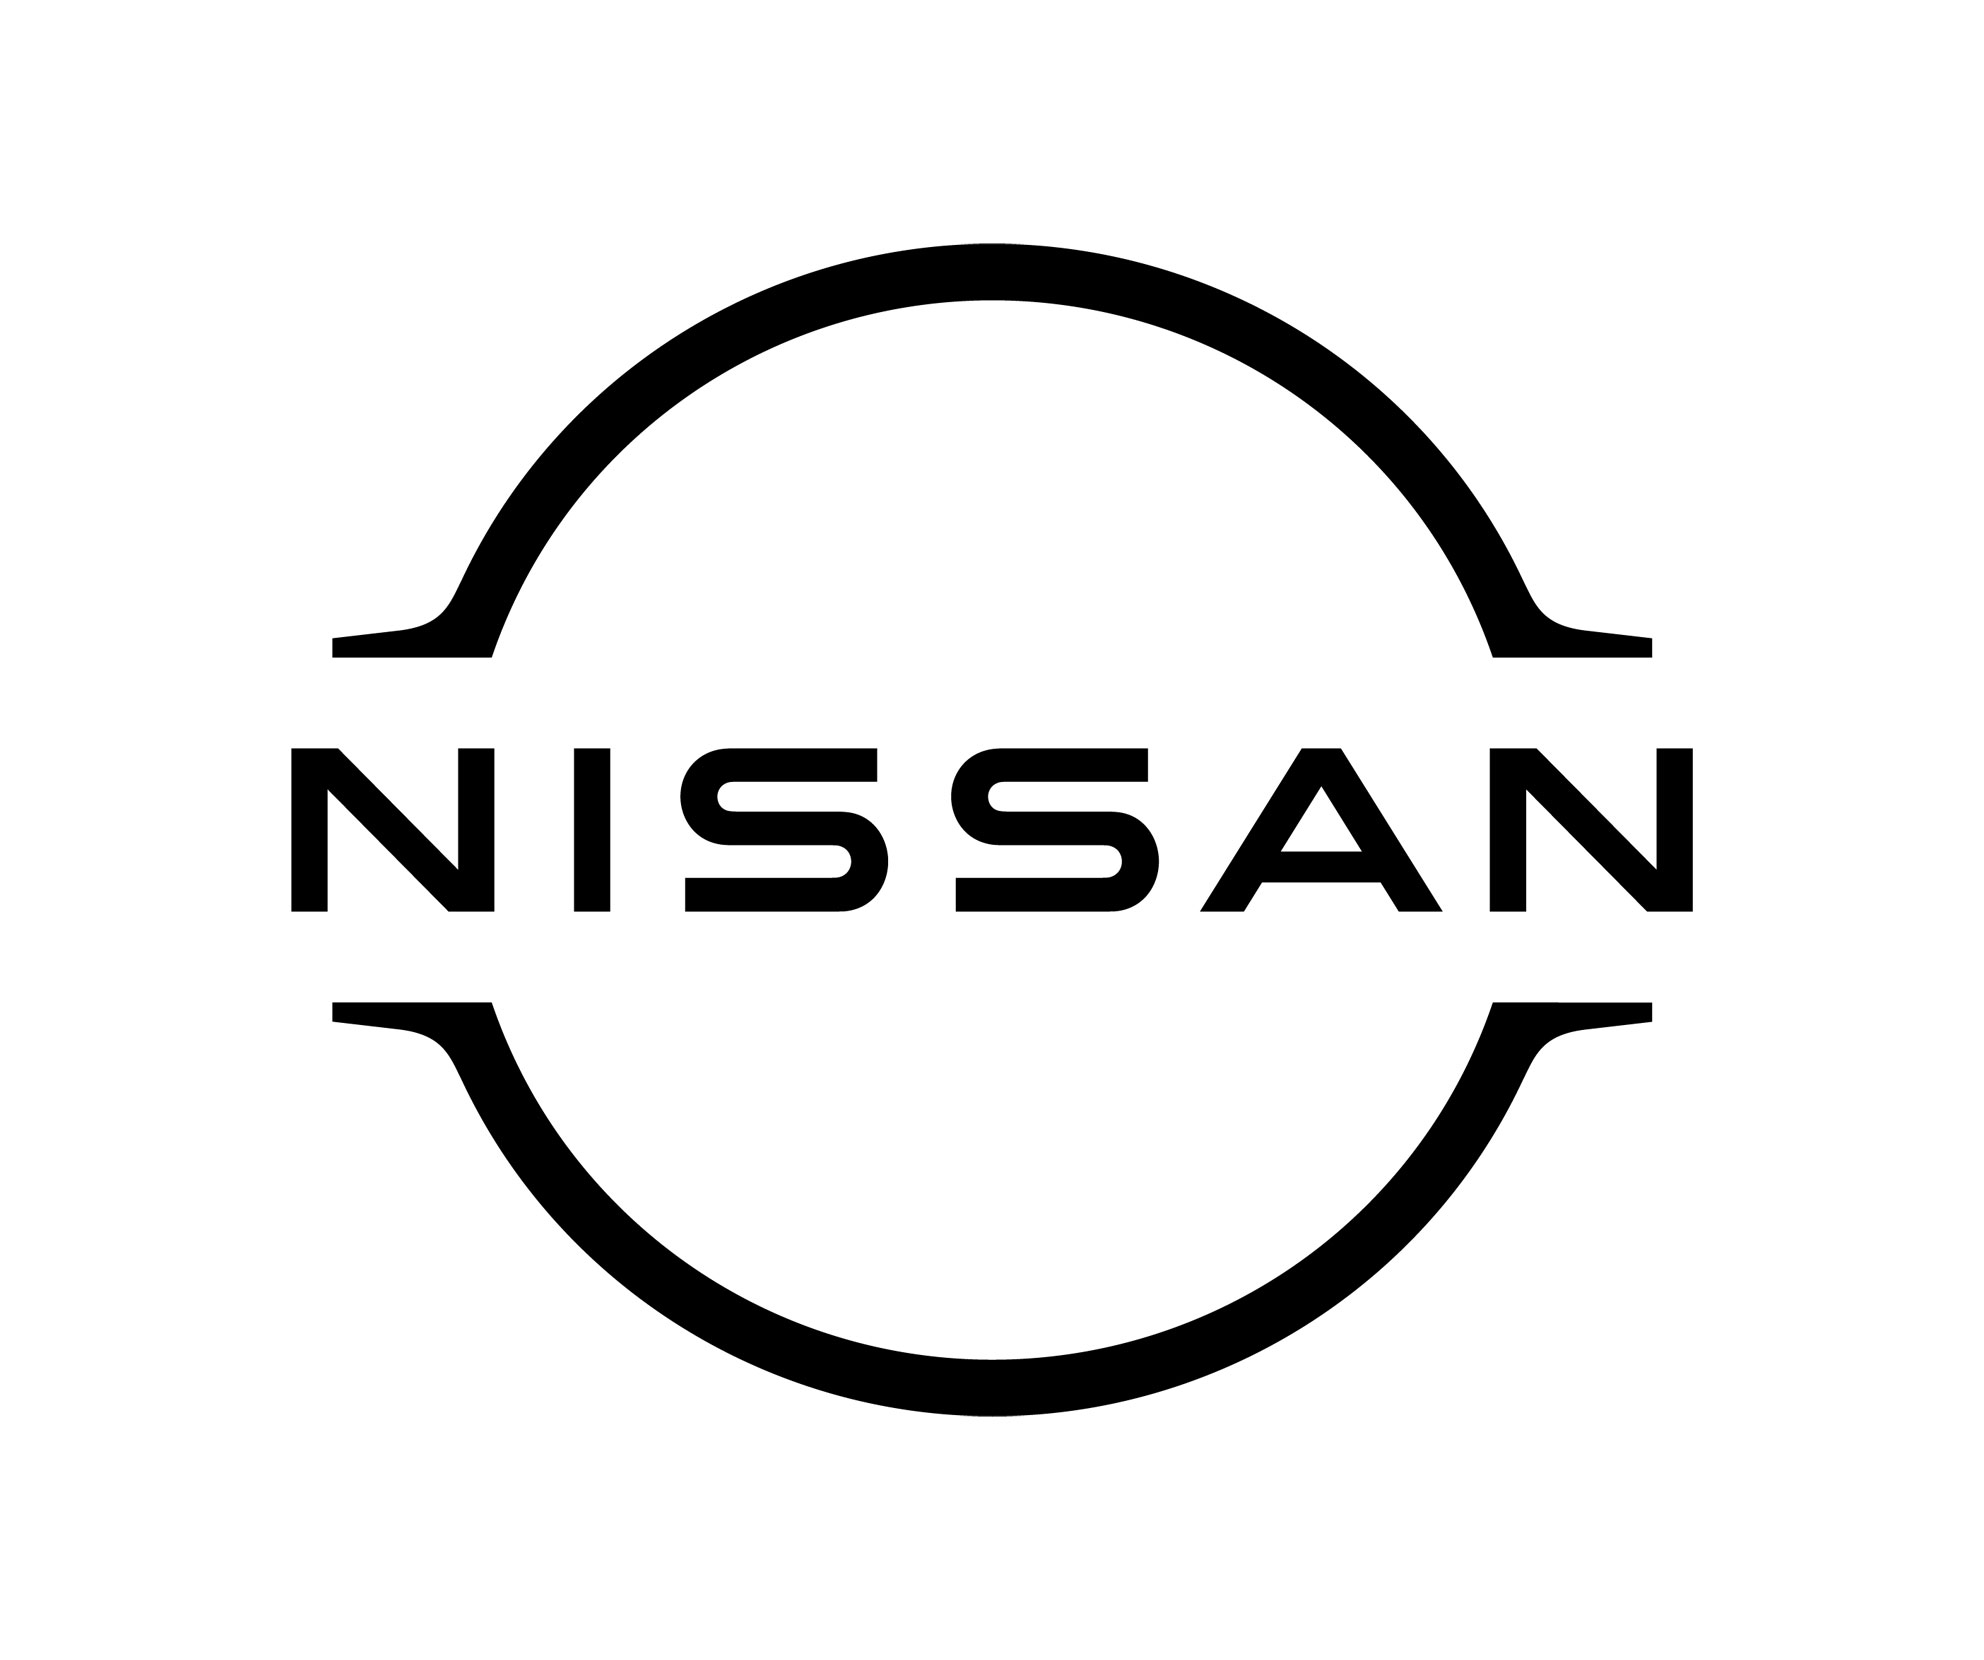 nouveau-logo-noir-nissan-copie